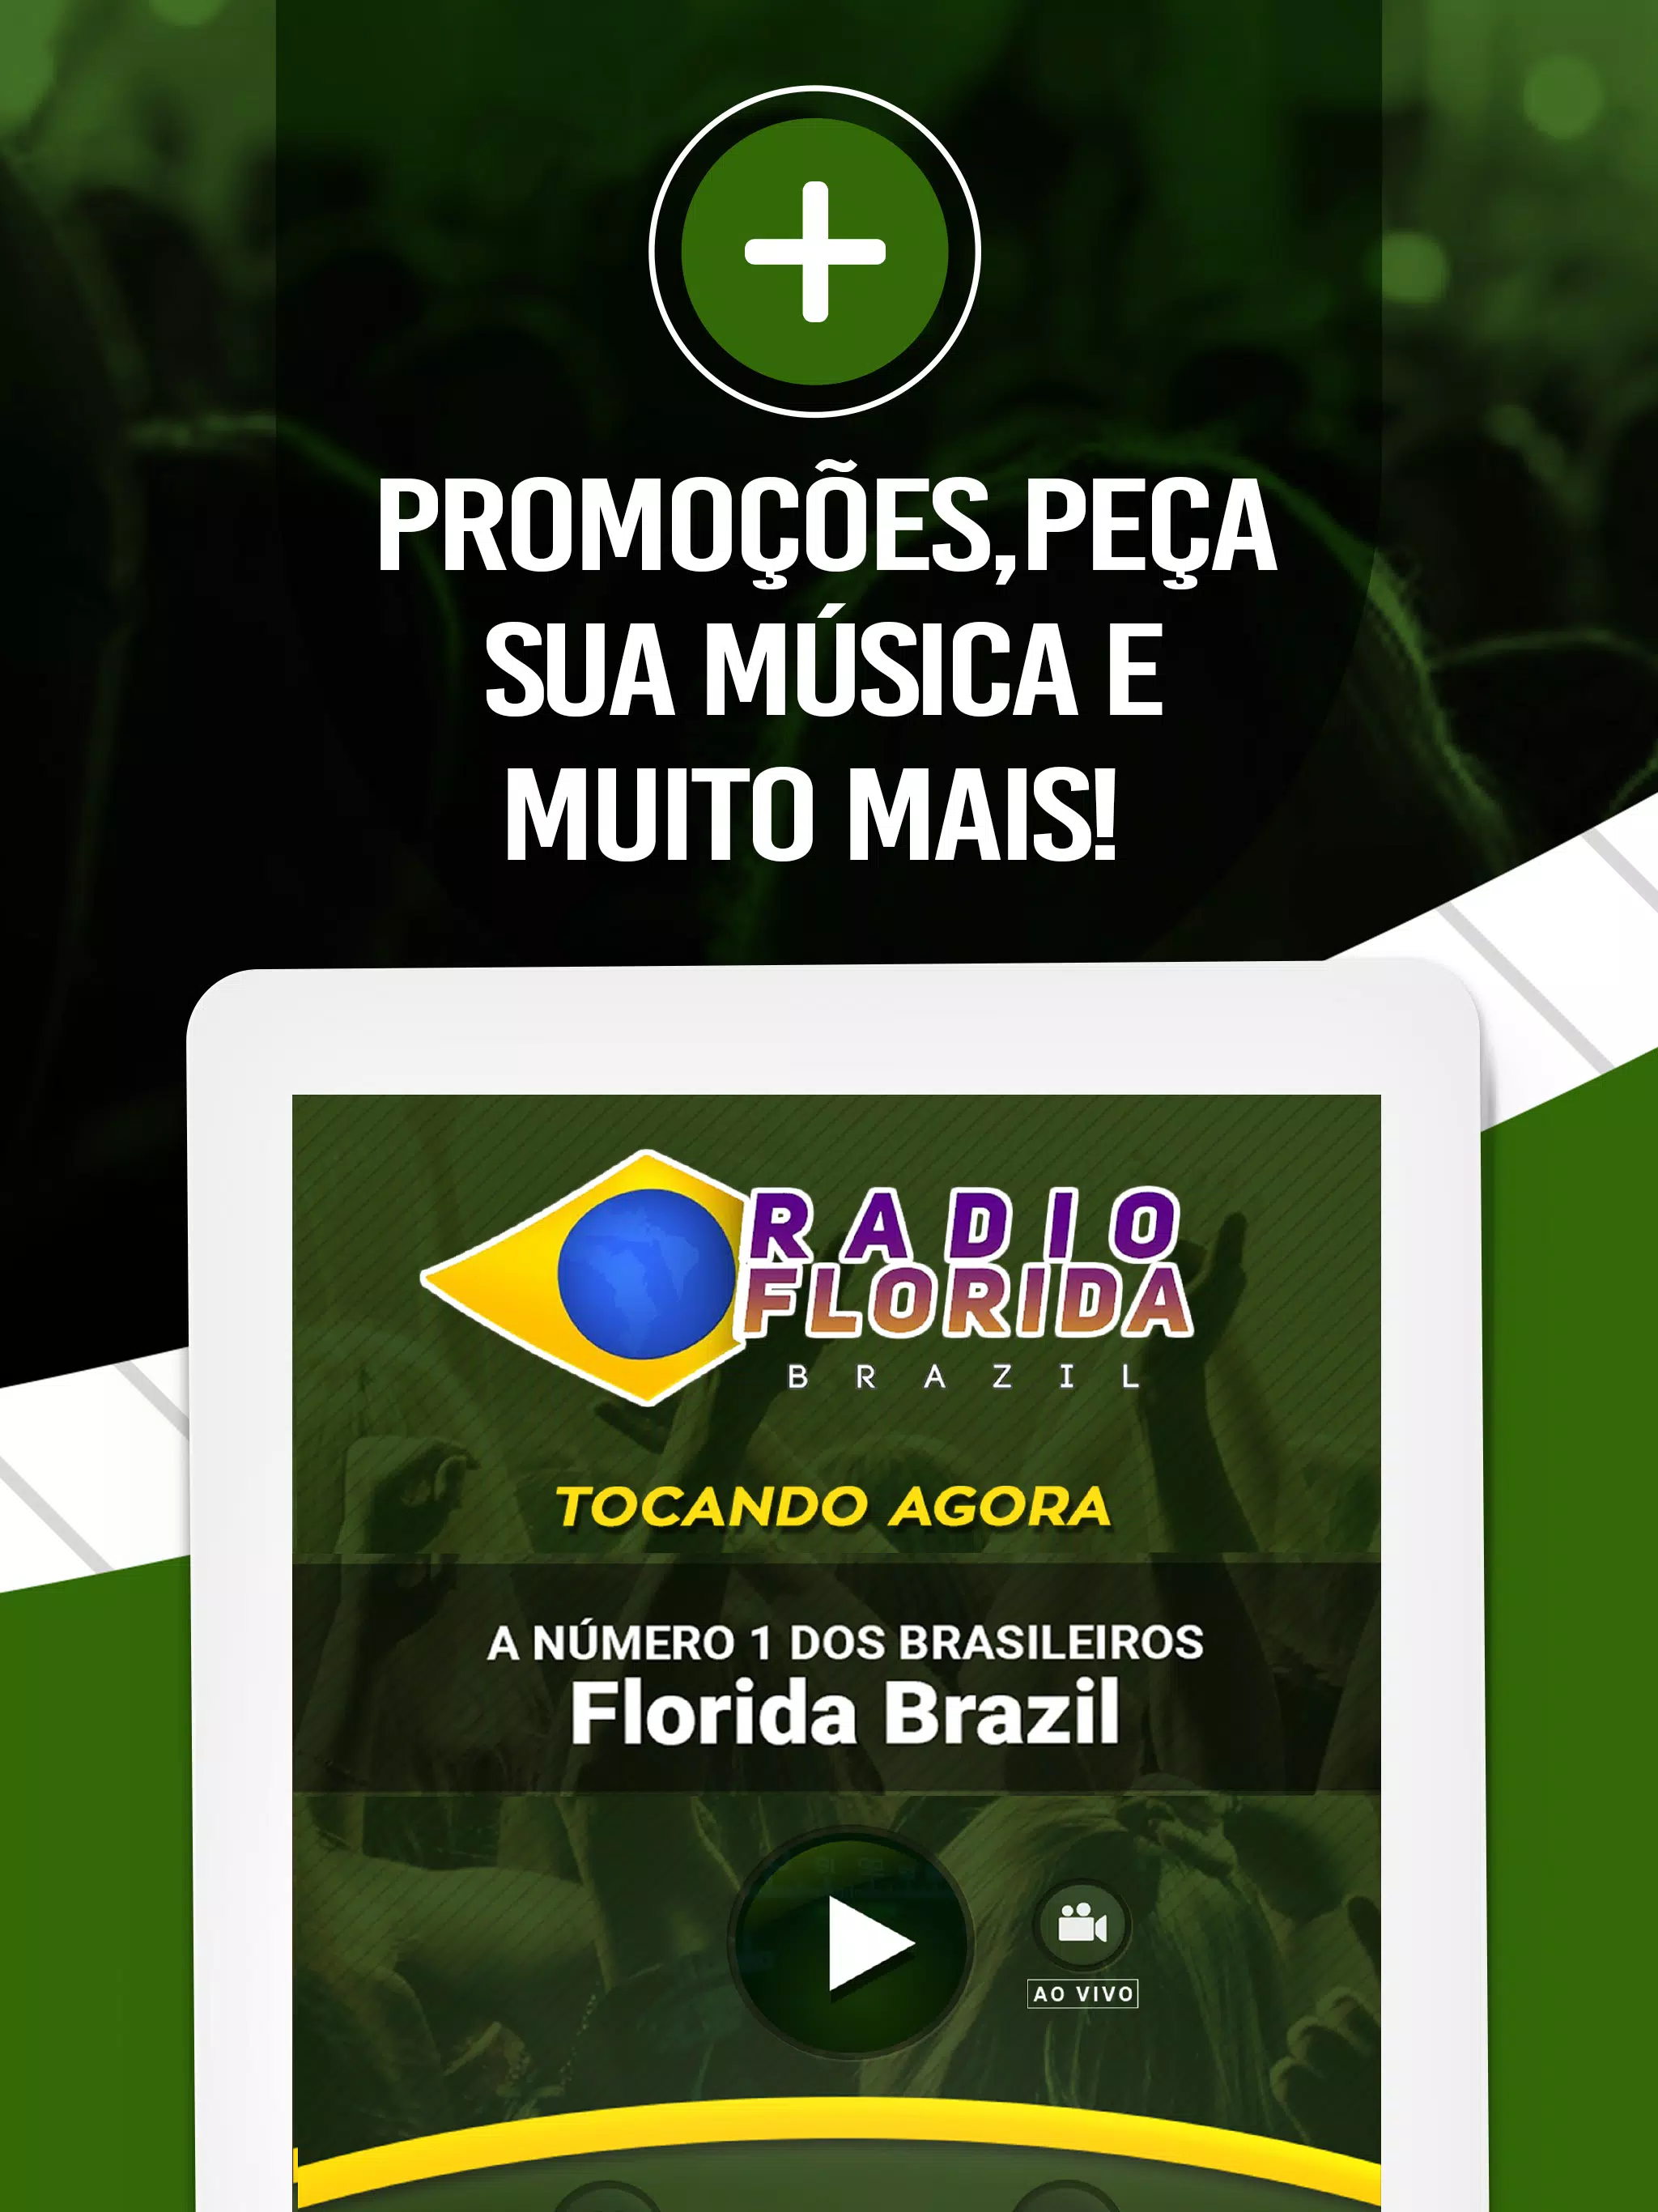 Futebol Ao Vivo Jarbas Duarte Apk Download for Android- Latest